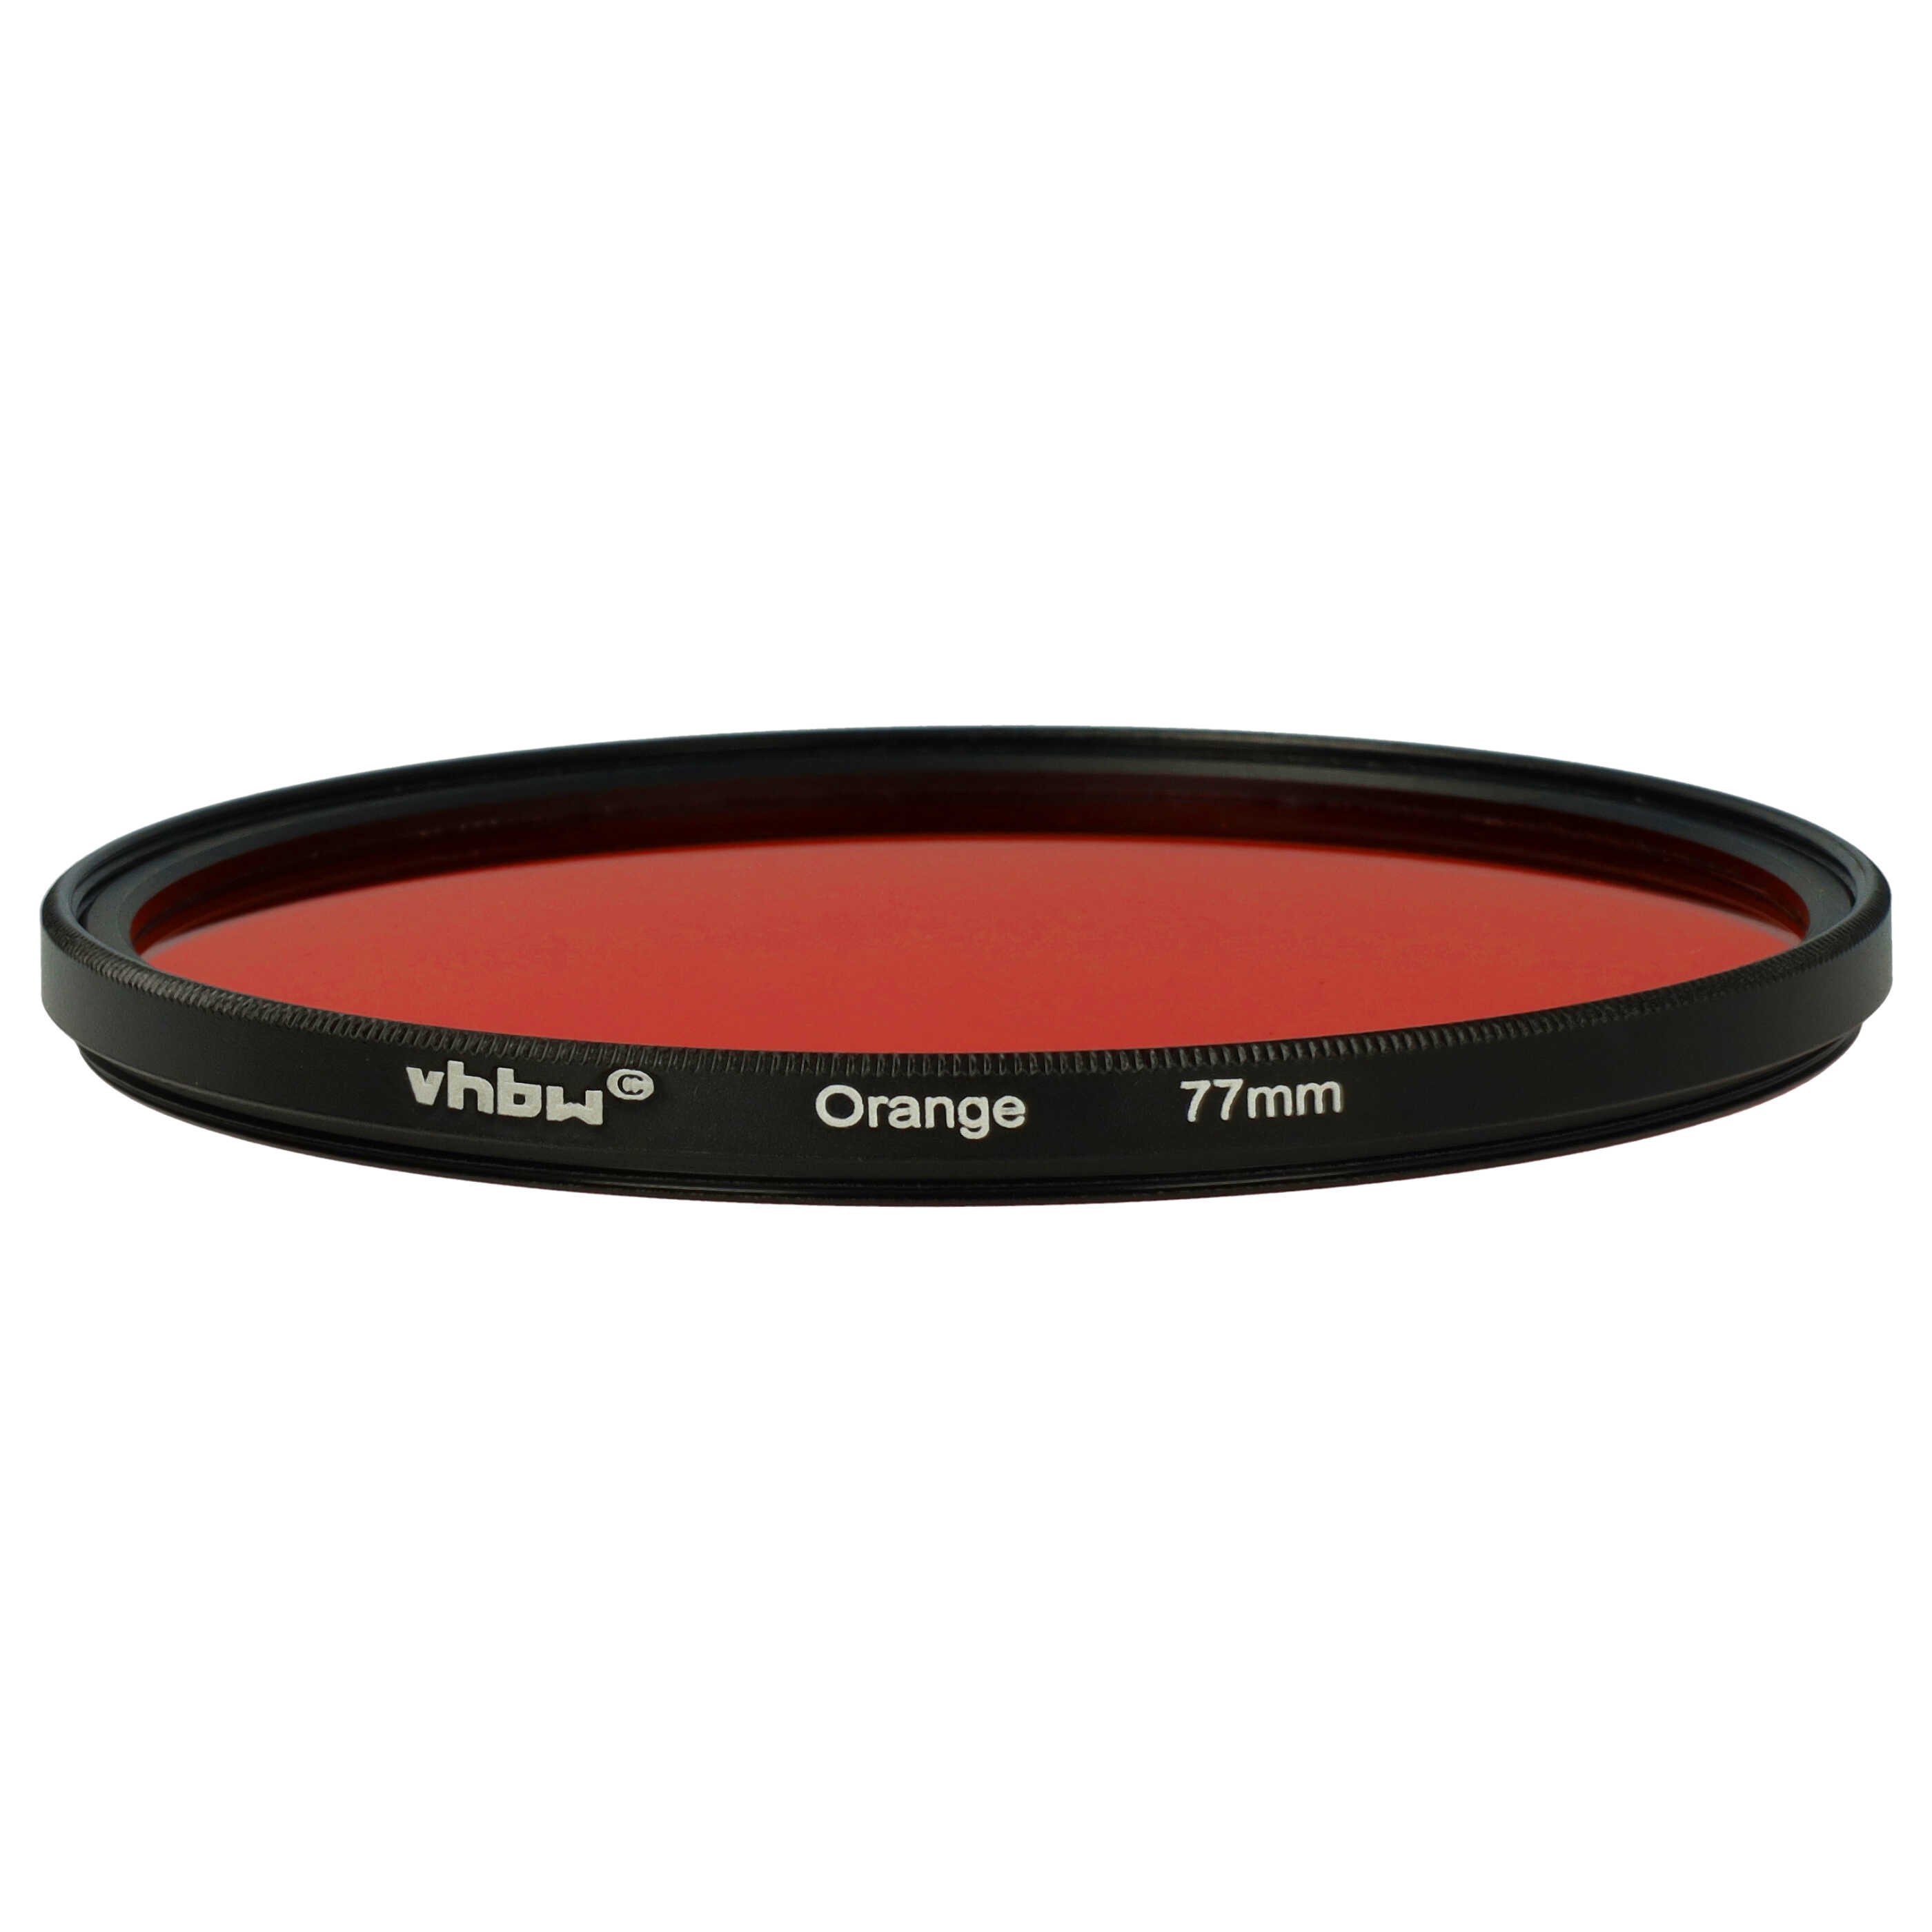 Farbfilter orange passend für Kamera Objektive mit 77 mm Filtergewinde - Orangefilter